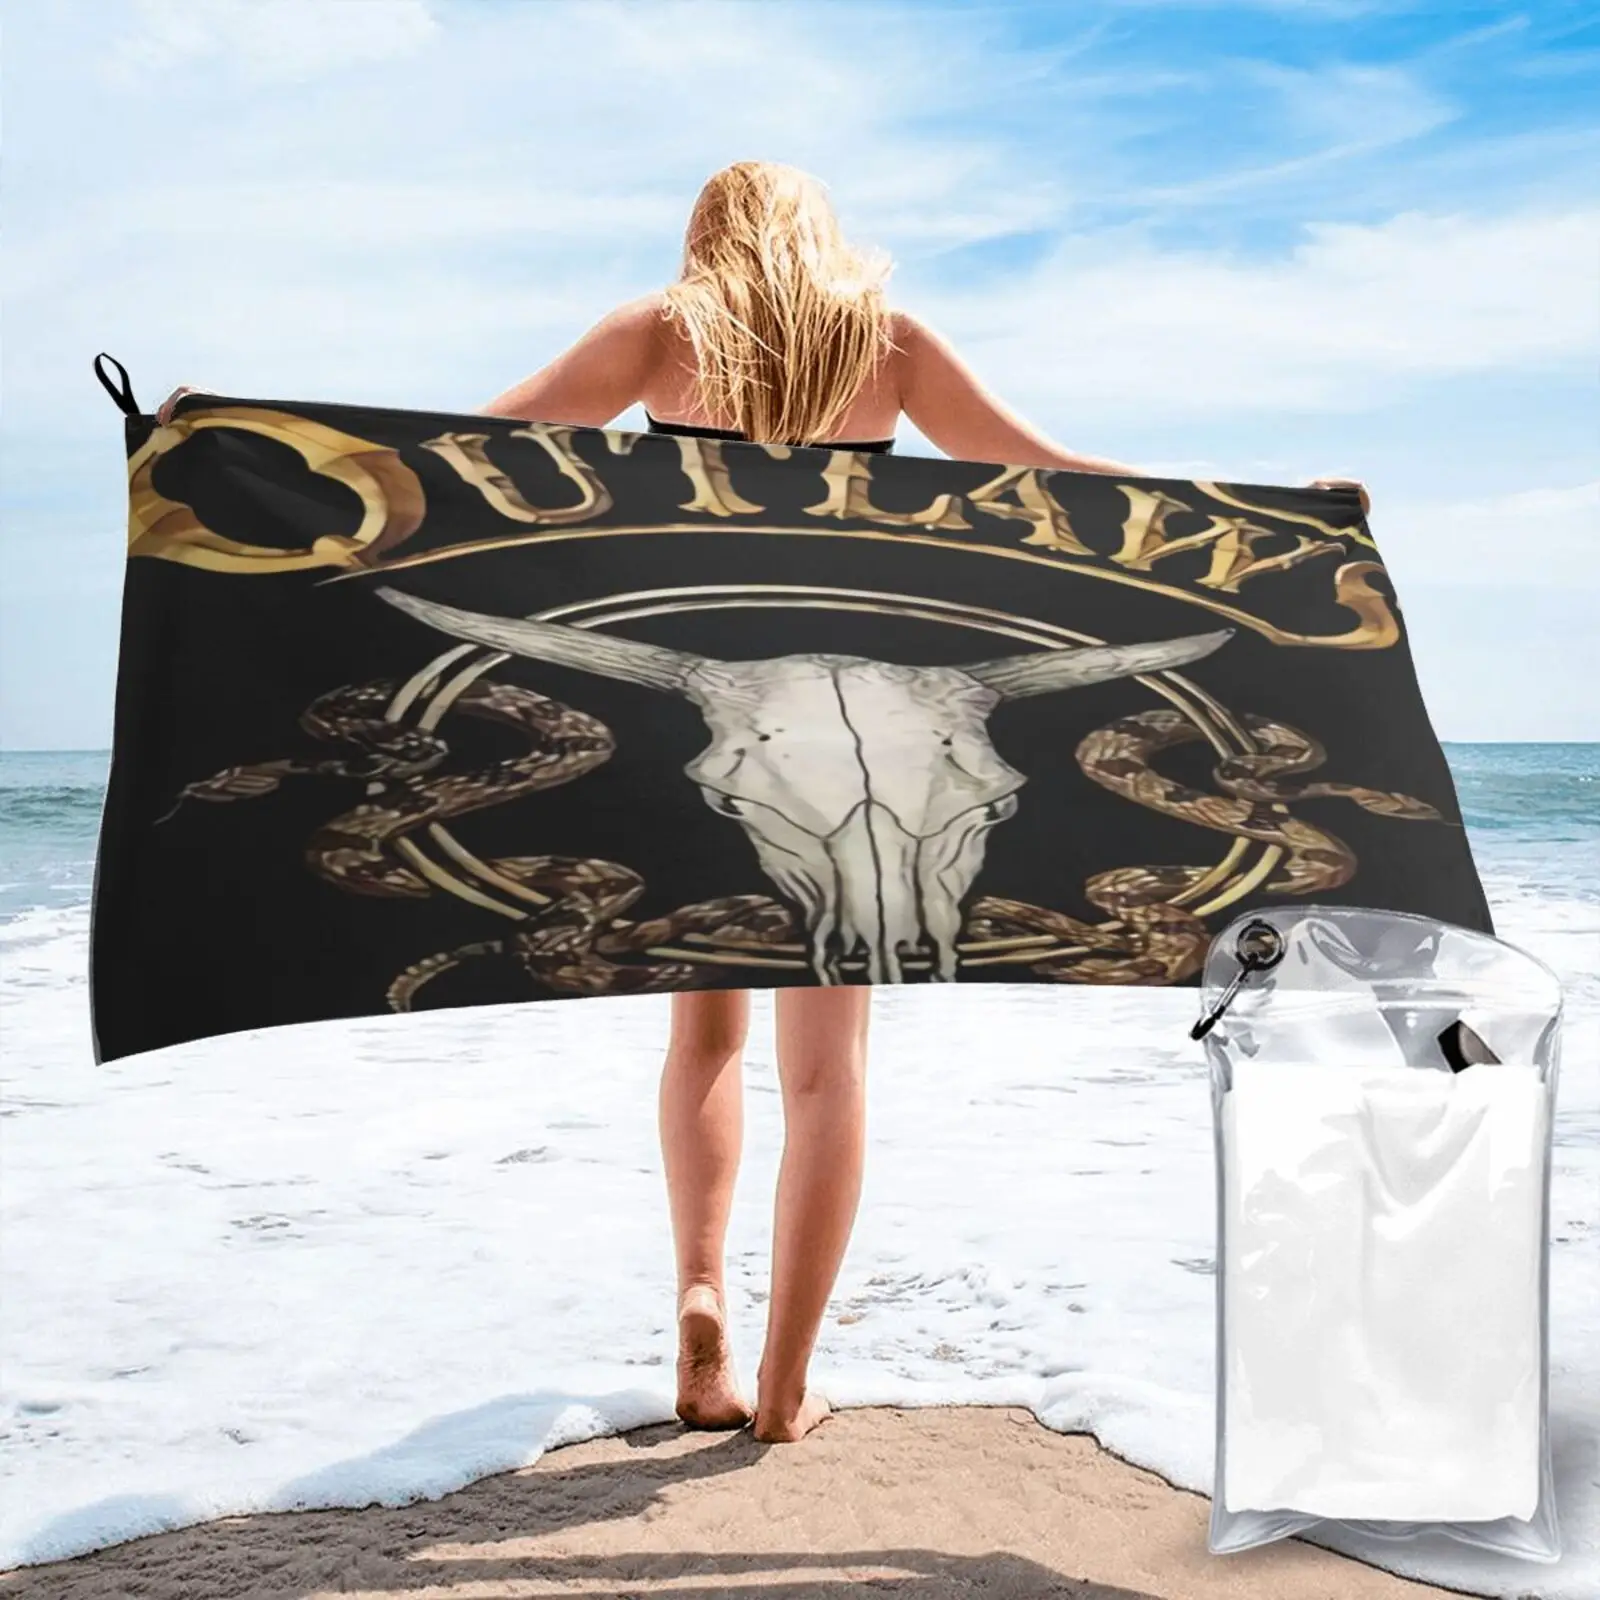 

Популярное пляжное полотенце Outlaw Южного диапазона 6923, женский халат, банное полотенце, пляжное полотенце, роскошное полотенце для сауны